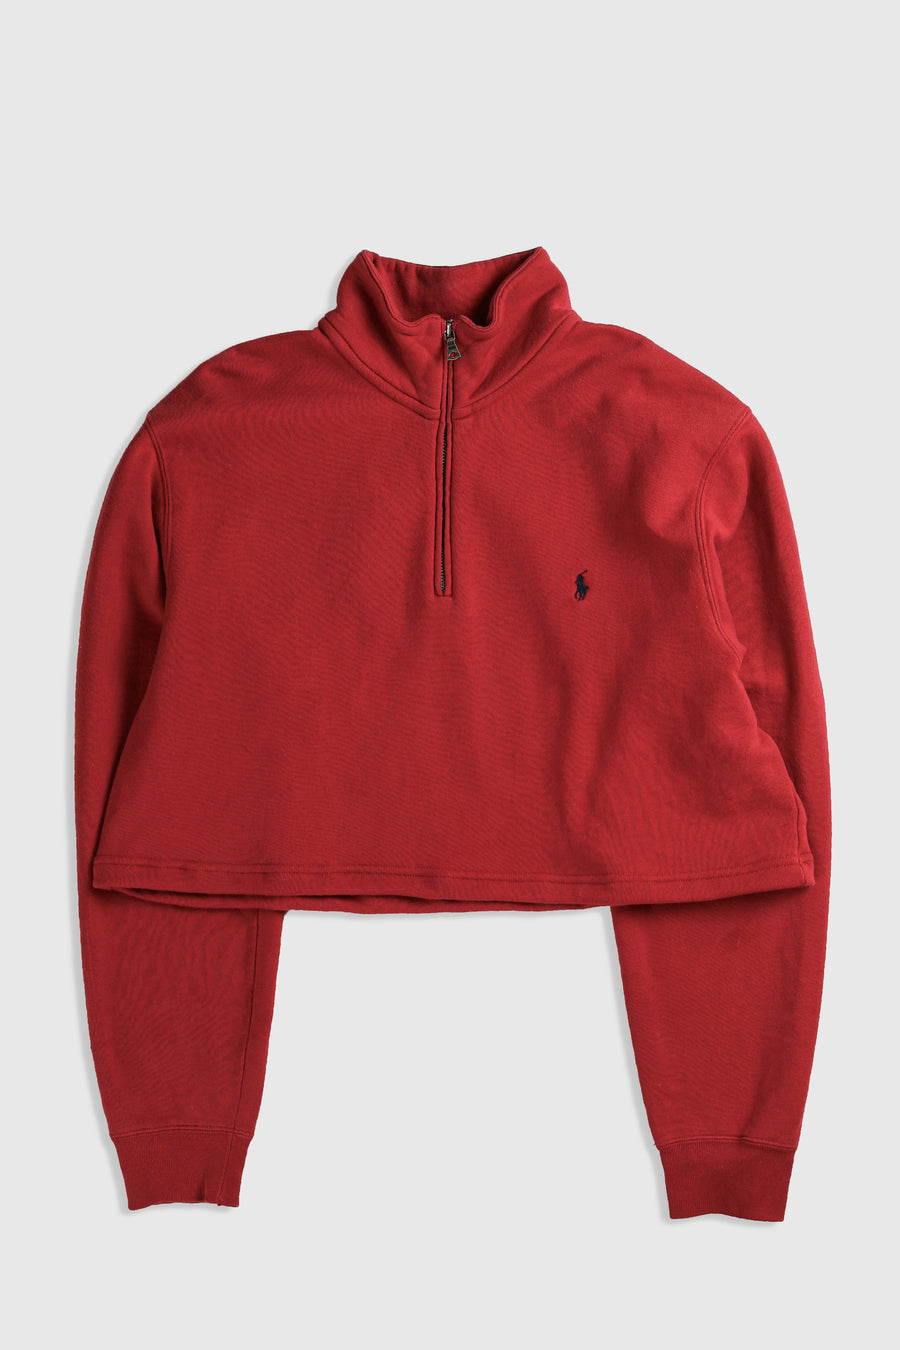 Rework Crop Sweatshirt - XL